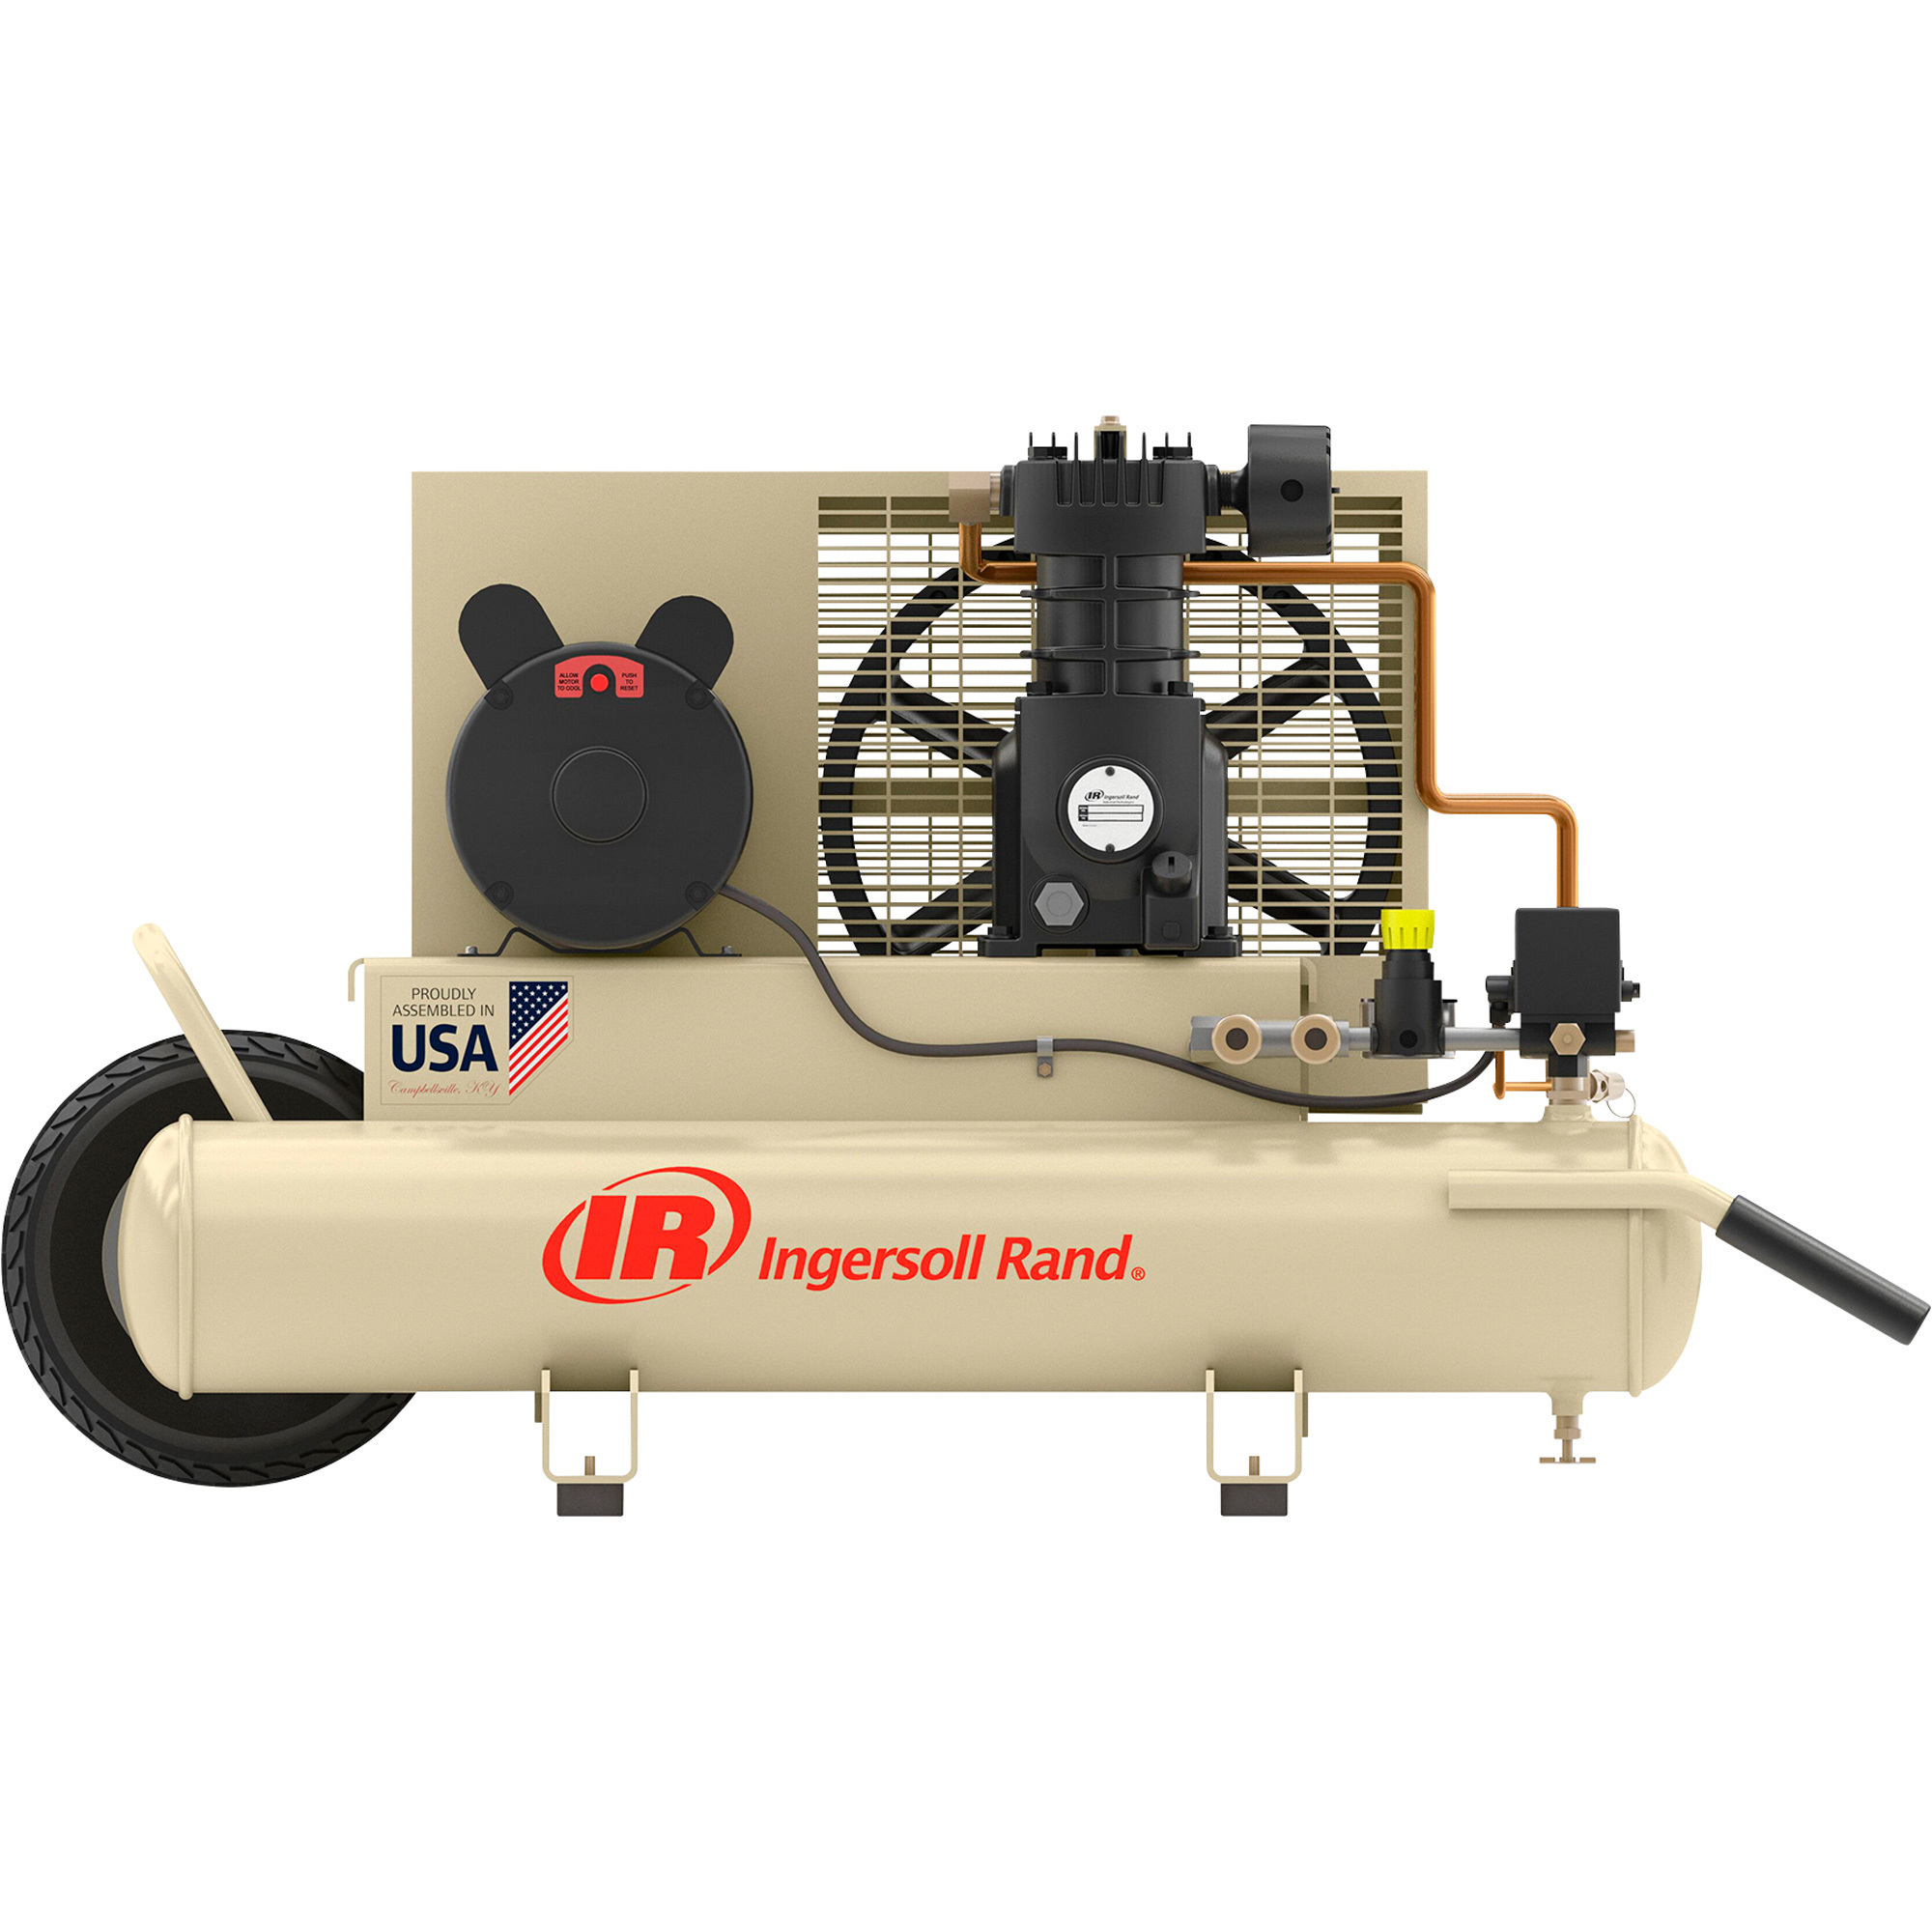 Ingersoll Rand Portable Electric Air Compressor, 3 HP, 230 Volt, 8